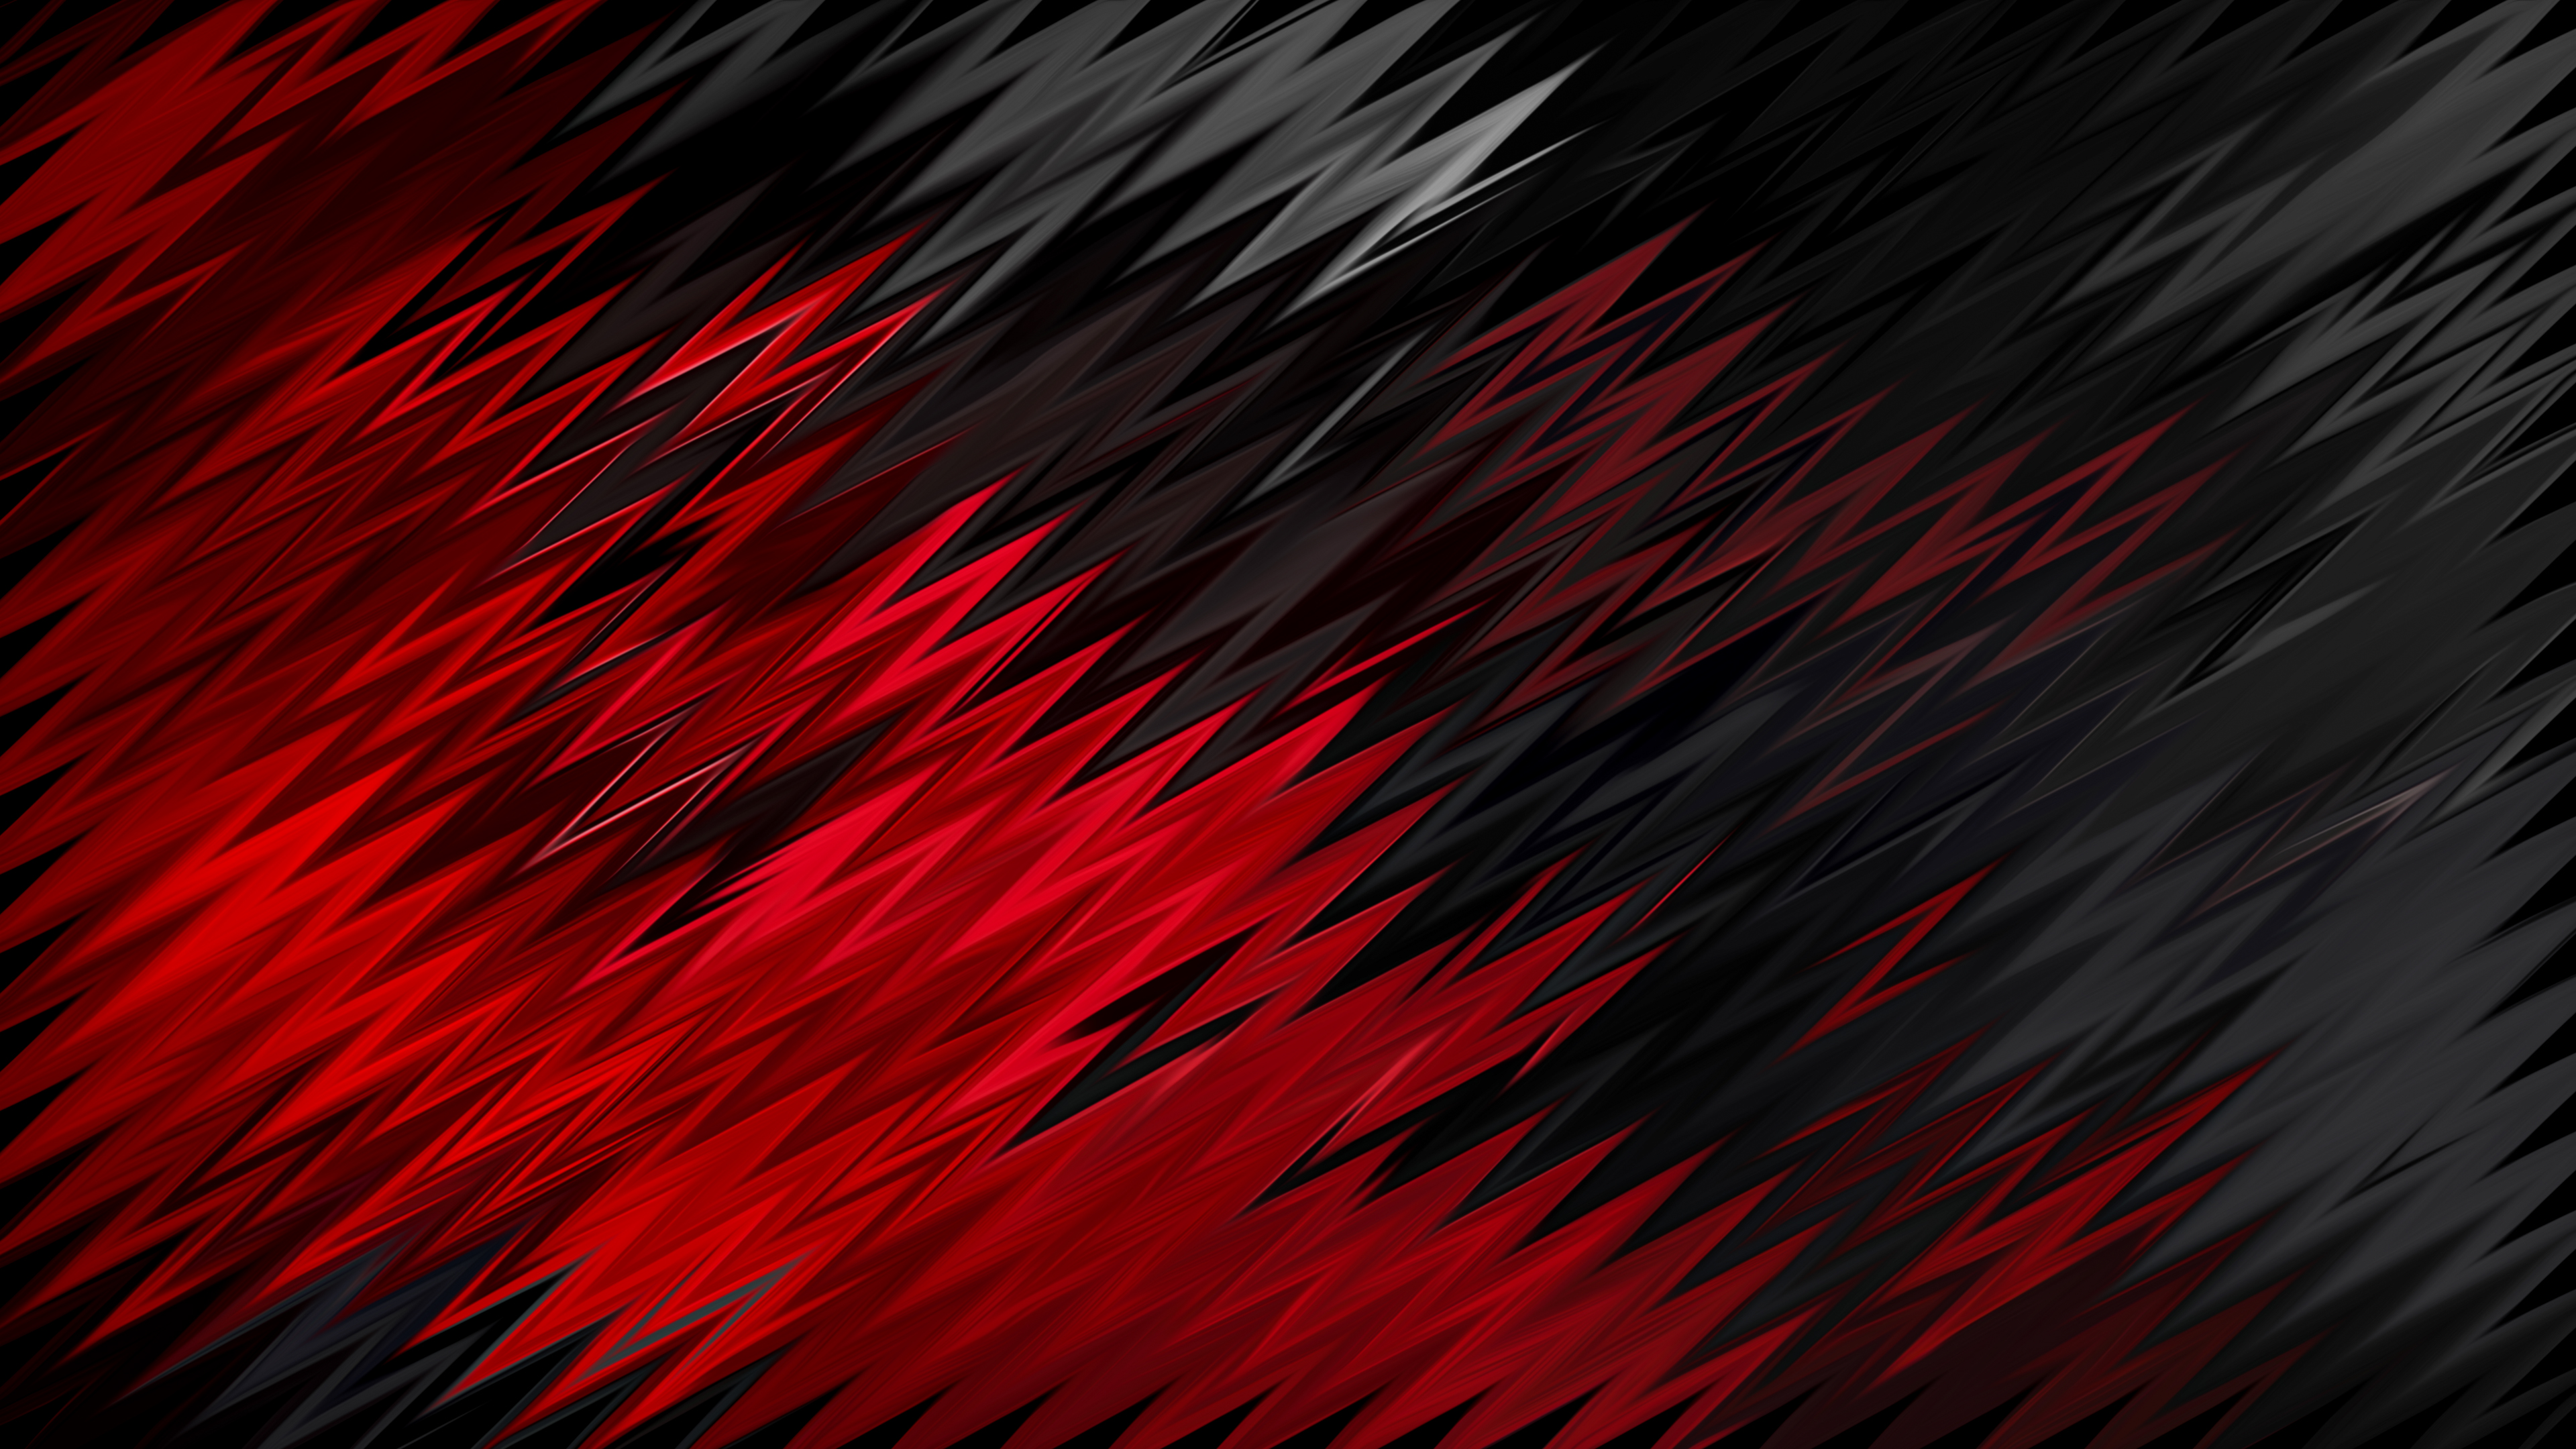 Hình nền trừu tượng HD 4k đỏ đen - Bạn cần một hình nền độc đáo để làm nổi bật desktop của mình? Hãy xem ngay hình nền trừu tượng HD 4k đỏ đen và cảm nhận sự độc đáo, năng động mà nó mang lại. Chất lượng hình ảnh tuyệt vời cùng màu đỏ đen đậm chất nghệ thuật sẽ khiến bạn thật sự ấn tượng.